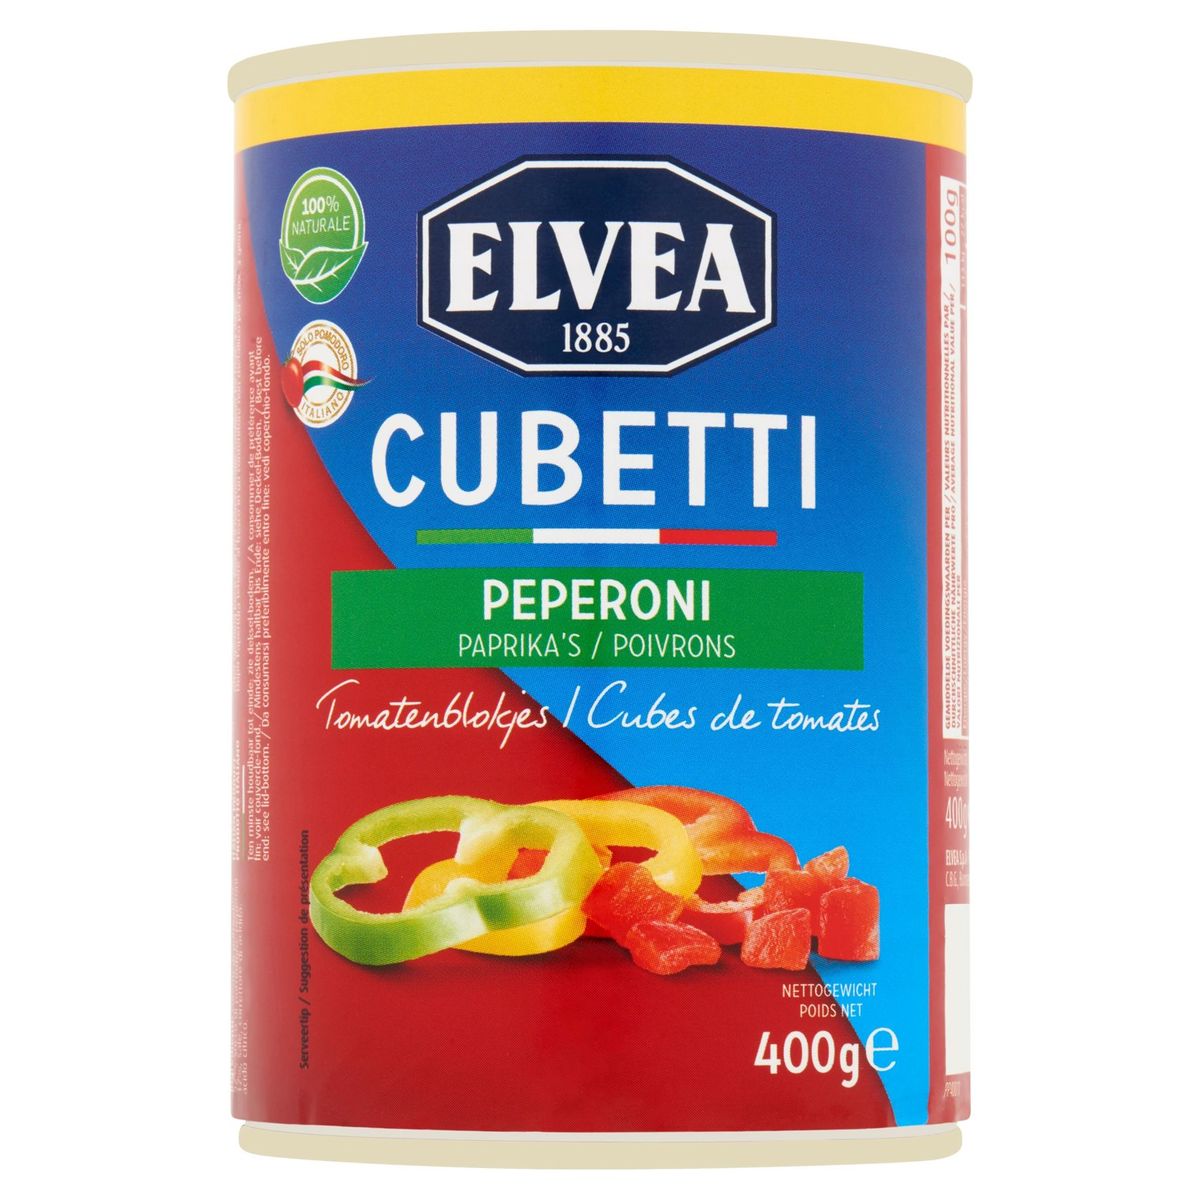 Elvea Cubetti Peperoni Paprika's Tomatenblokjes 400 g